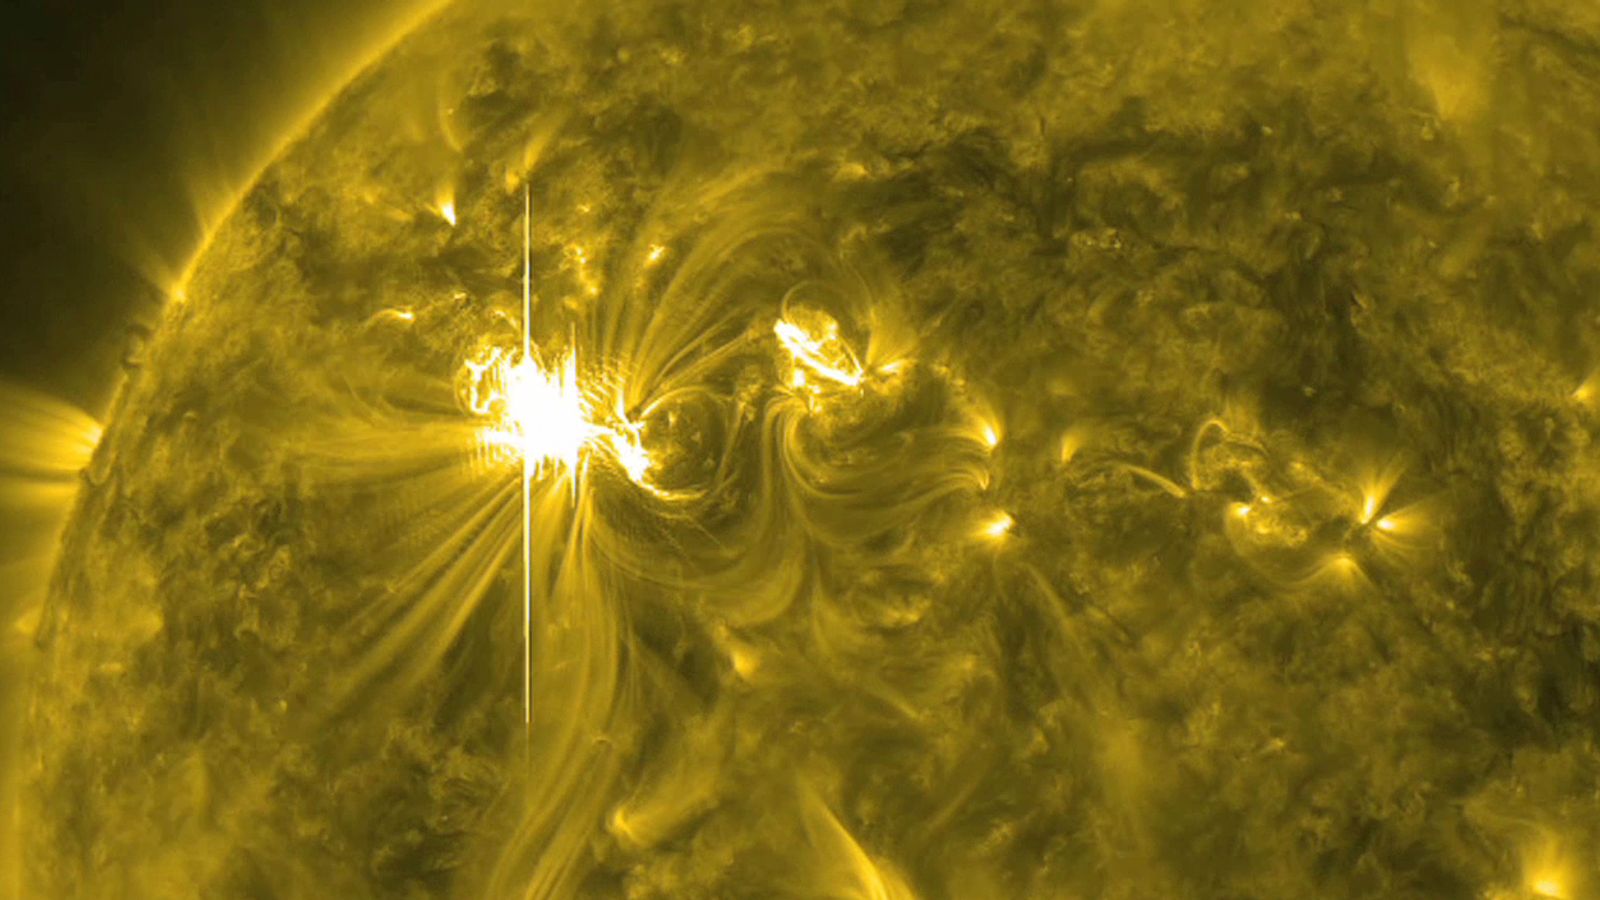 Peringatan badai geomagnetik dikeluarkan setelah 17 suar matahari meletus dari satu bintik matahari |  Berita sains dan teknologi